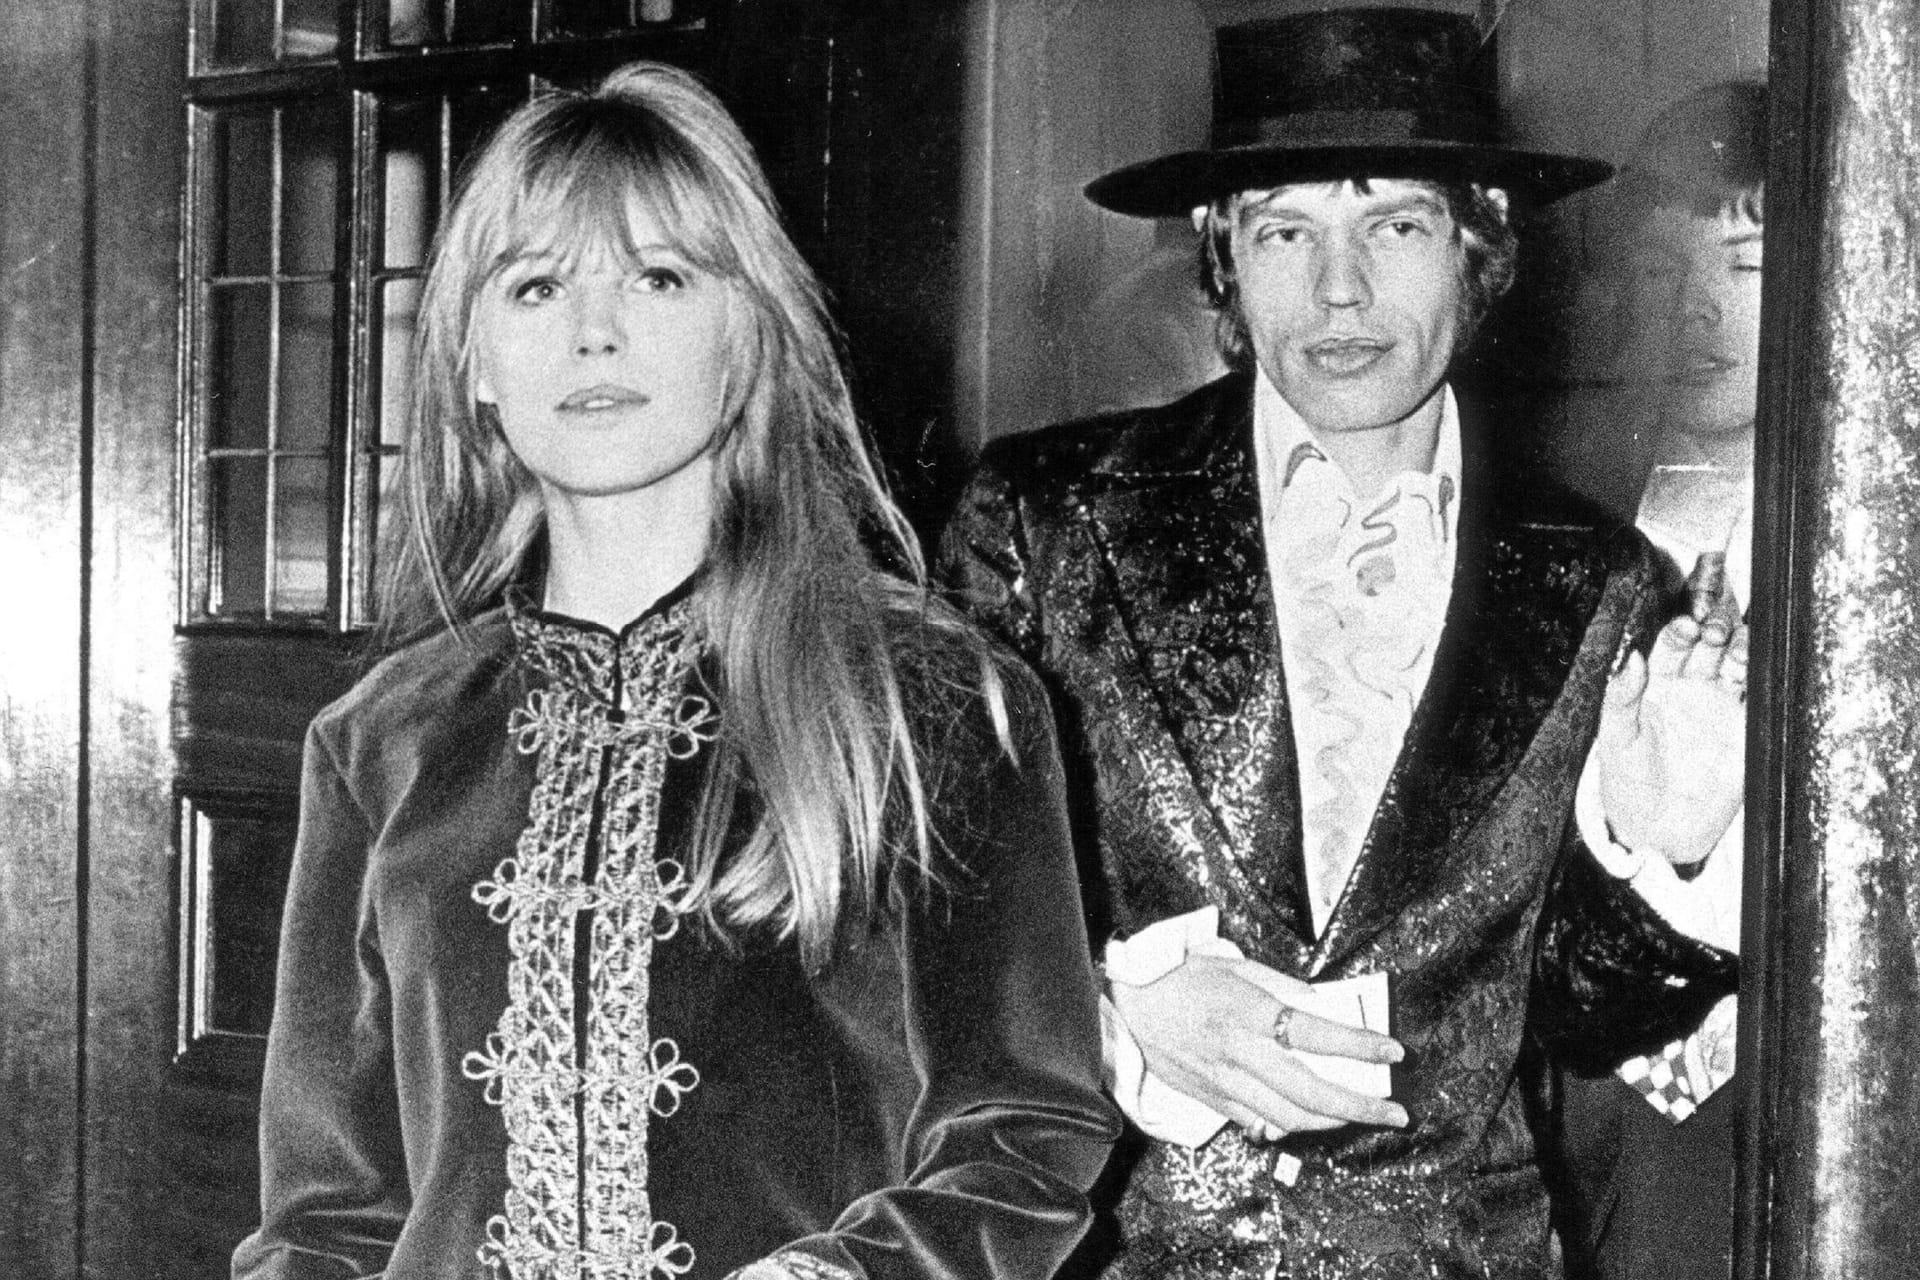 Marianne Faithful: Im gleichen Jahr der Trennung soll Mick Jagger mit der Sängerin zusammen gekommen sein. Diese soll schwanger geworden sein, erlitt jedoch eine Fehlgeburt. Trotzdem hielt ihre Beziehung bis 1969, die von Partys, Drogen und Affären geprägt sein soll.